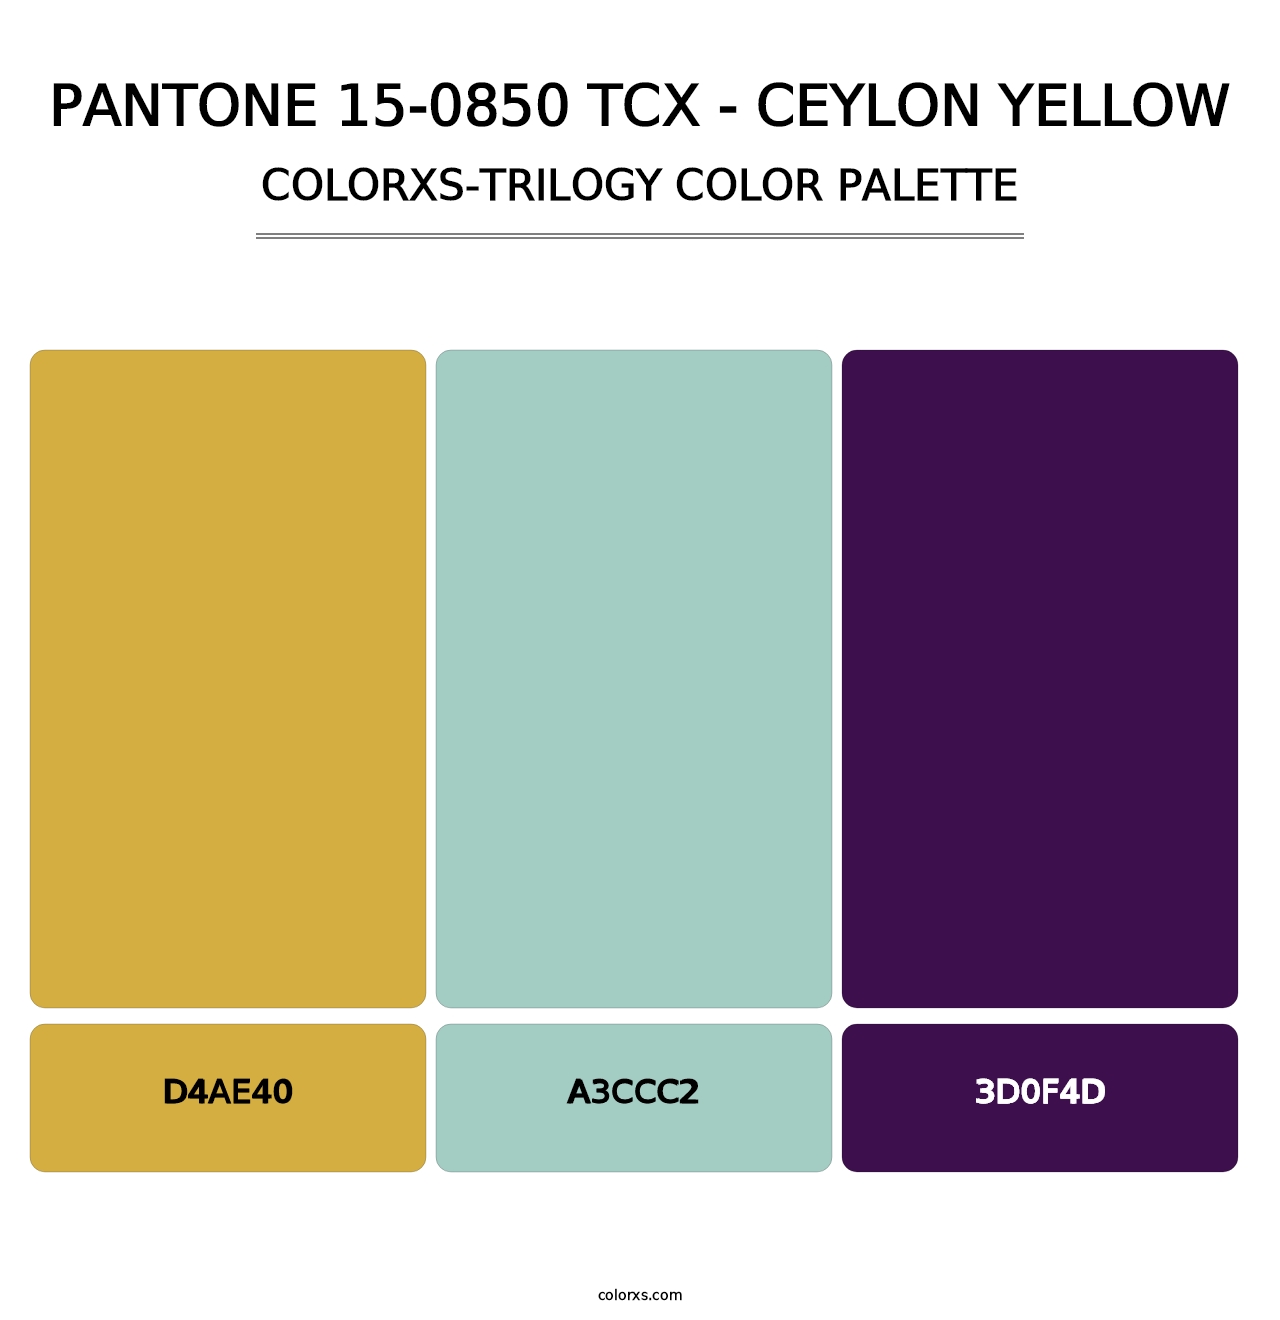 PANTONE 15-0850 TCX - Ceylon Yellow - Colorxs Trilogy Palette